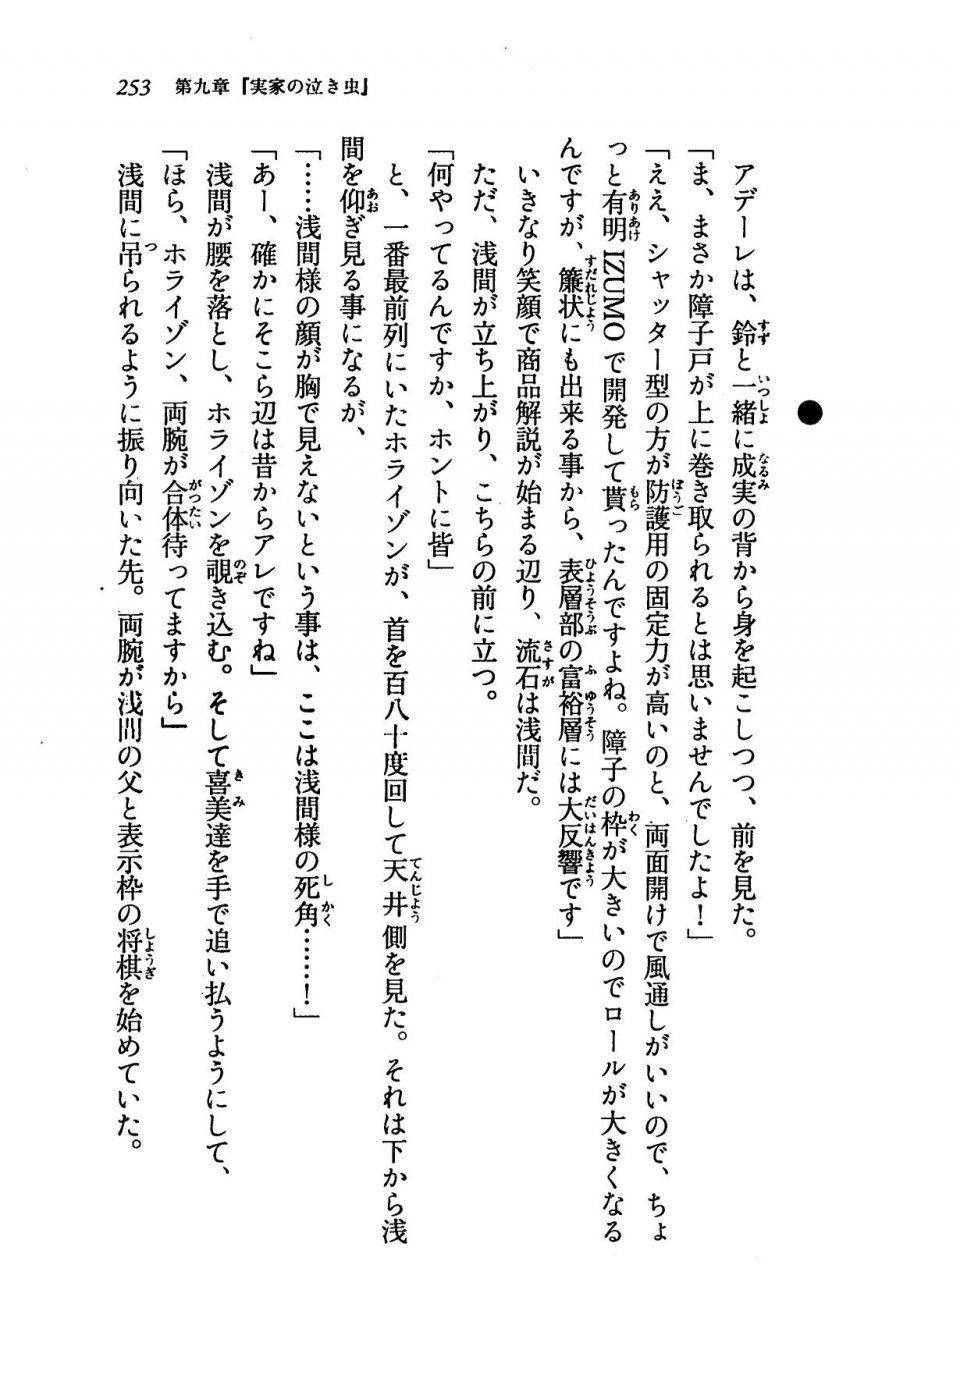 Kyoukai Senjou no Horizon LN Vol 19(8A) - Photo #253